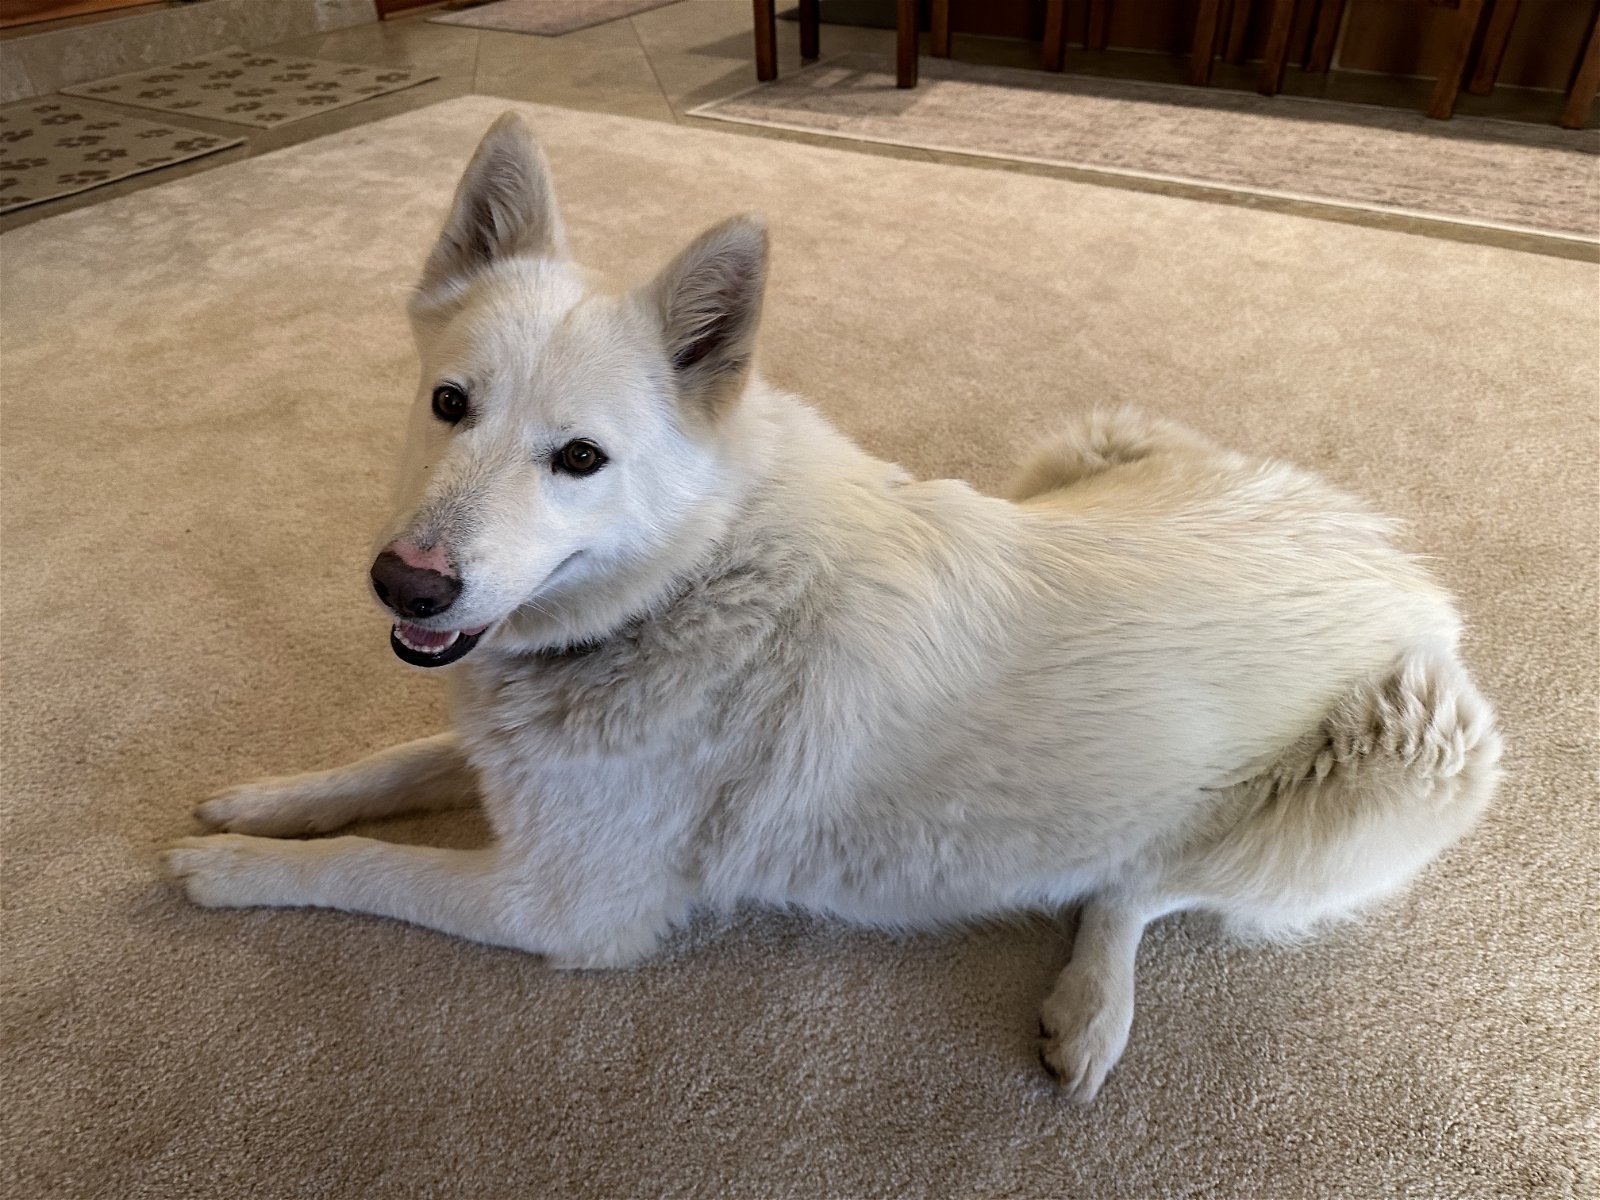 adoptable Dog in Reno, NV named Snuggles